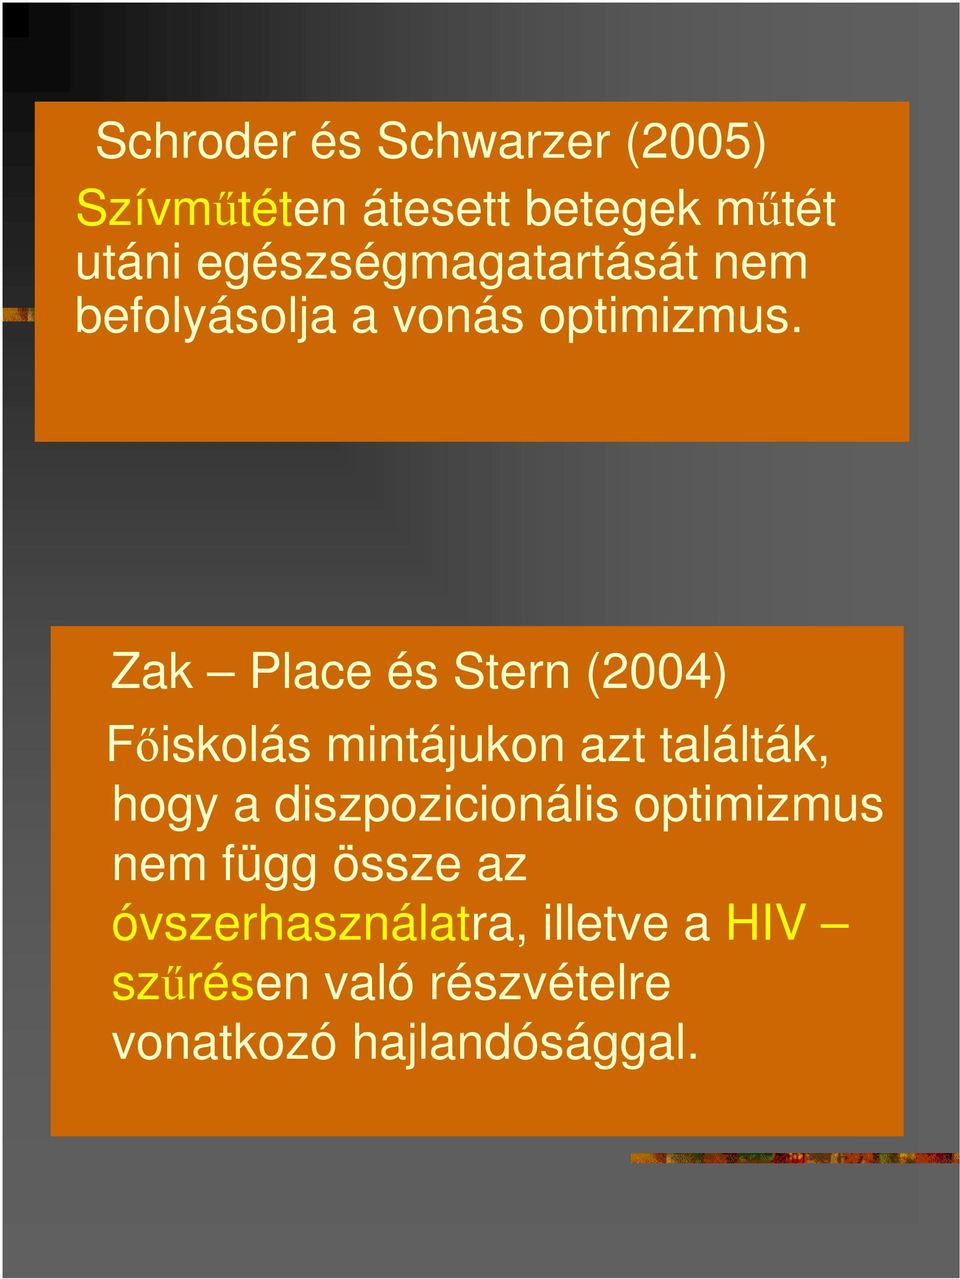 Zak Place és Stern (2004) Fıiskolás mintájukon azt találták, hogy a